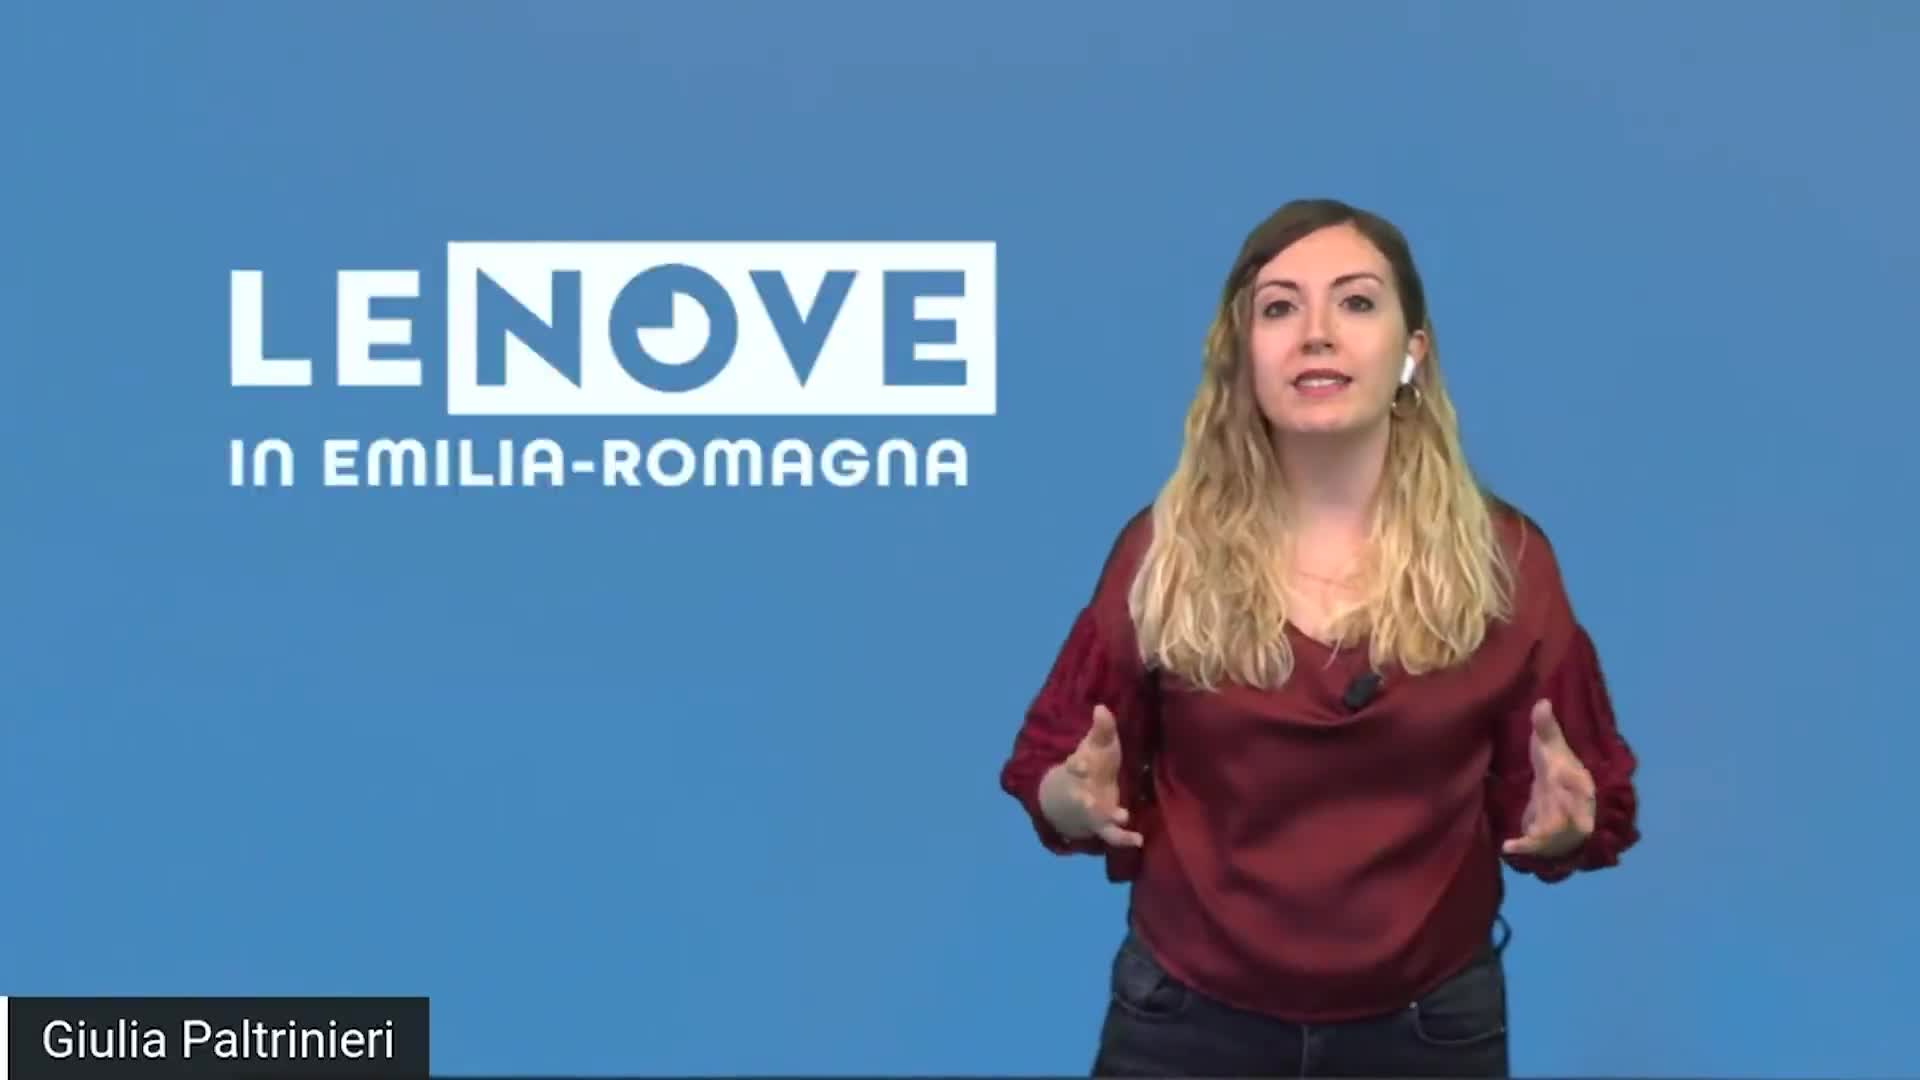 Le Nove in Emilia-Romagna - immagine